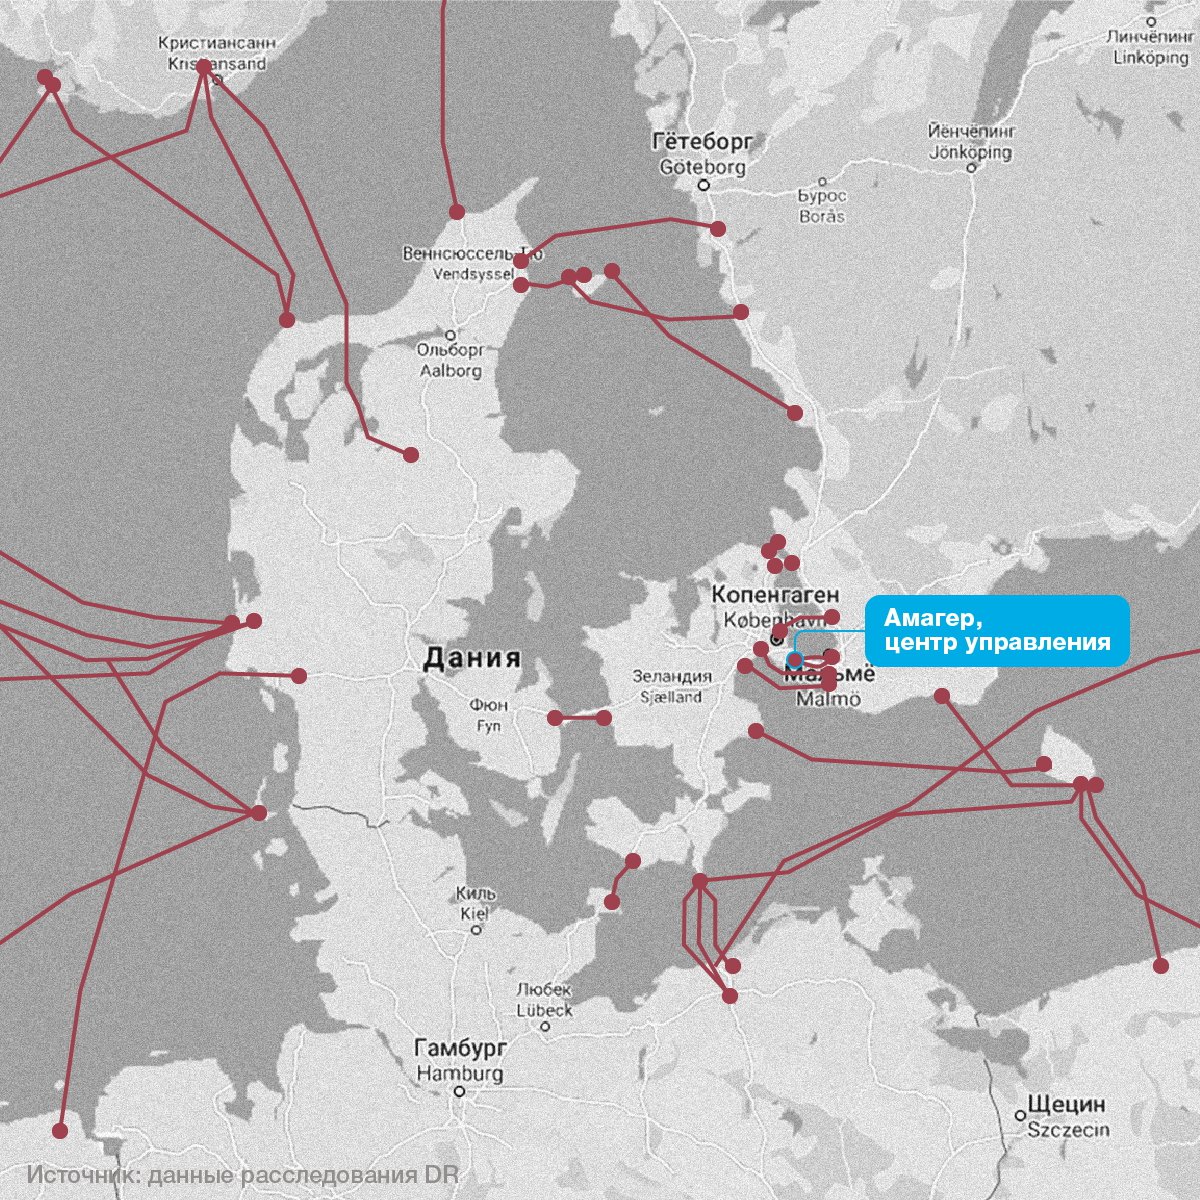 Карта интернет-кабелей в Европе. В центре — датский ЦУ, где было установлено американское шпионское оборудование